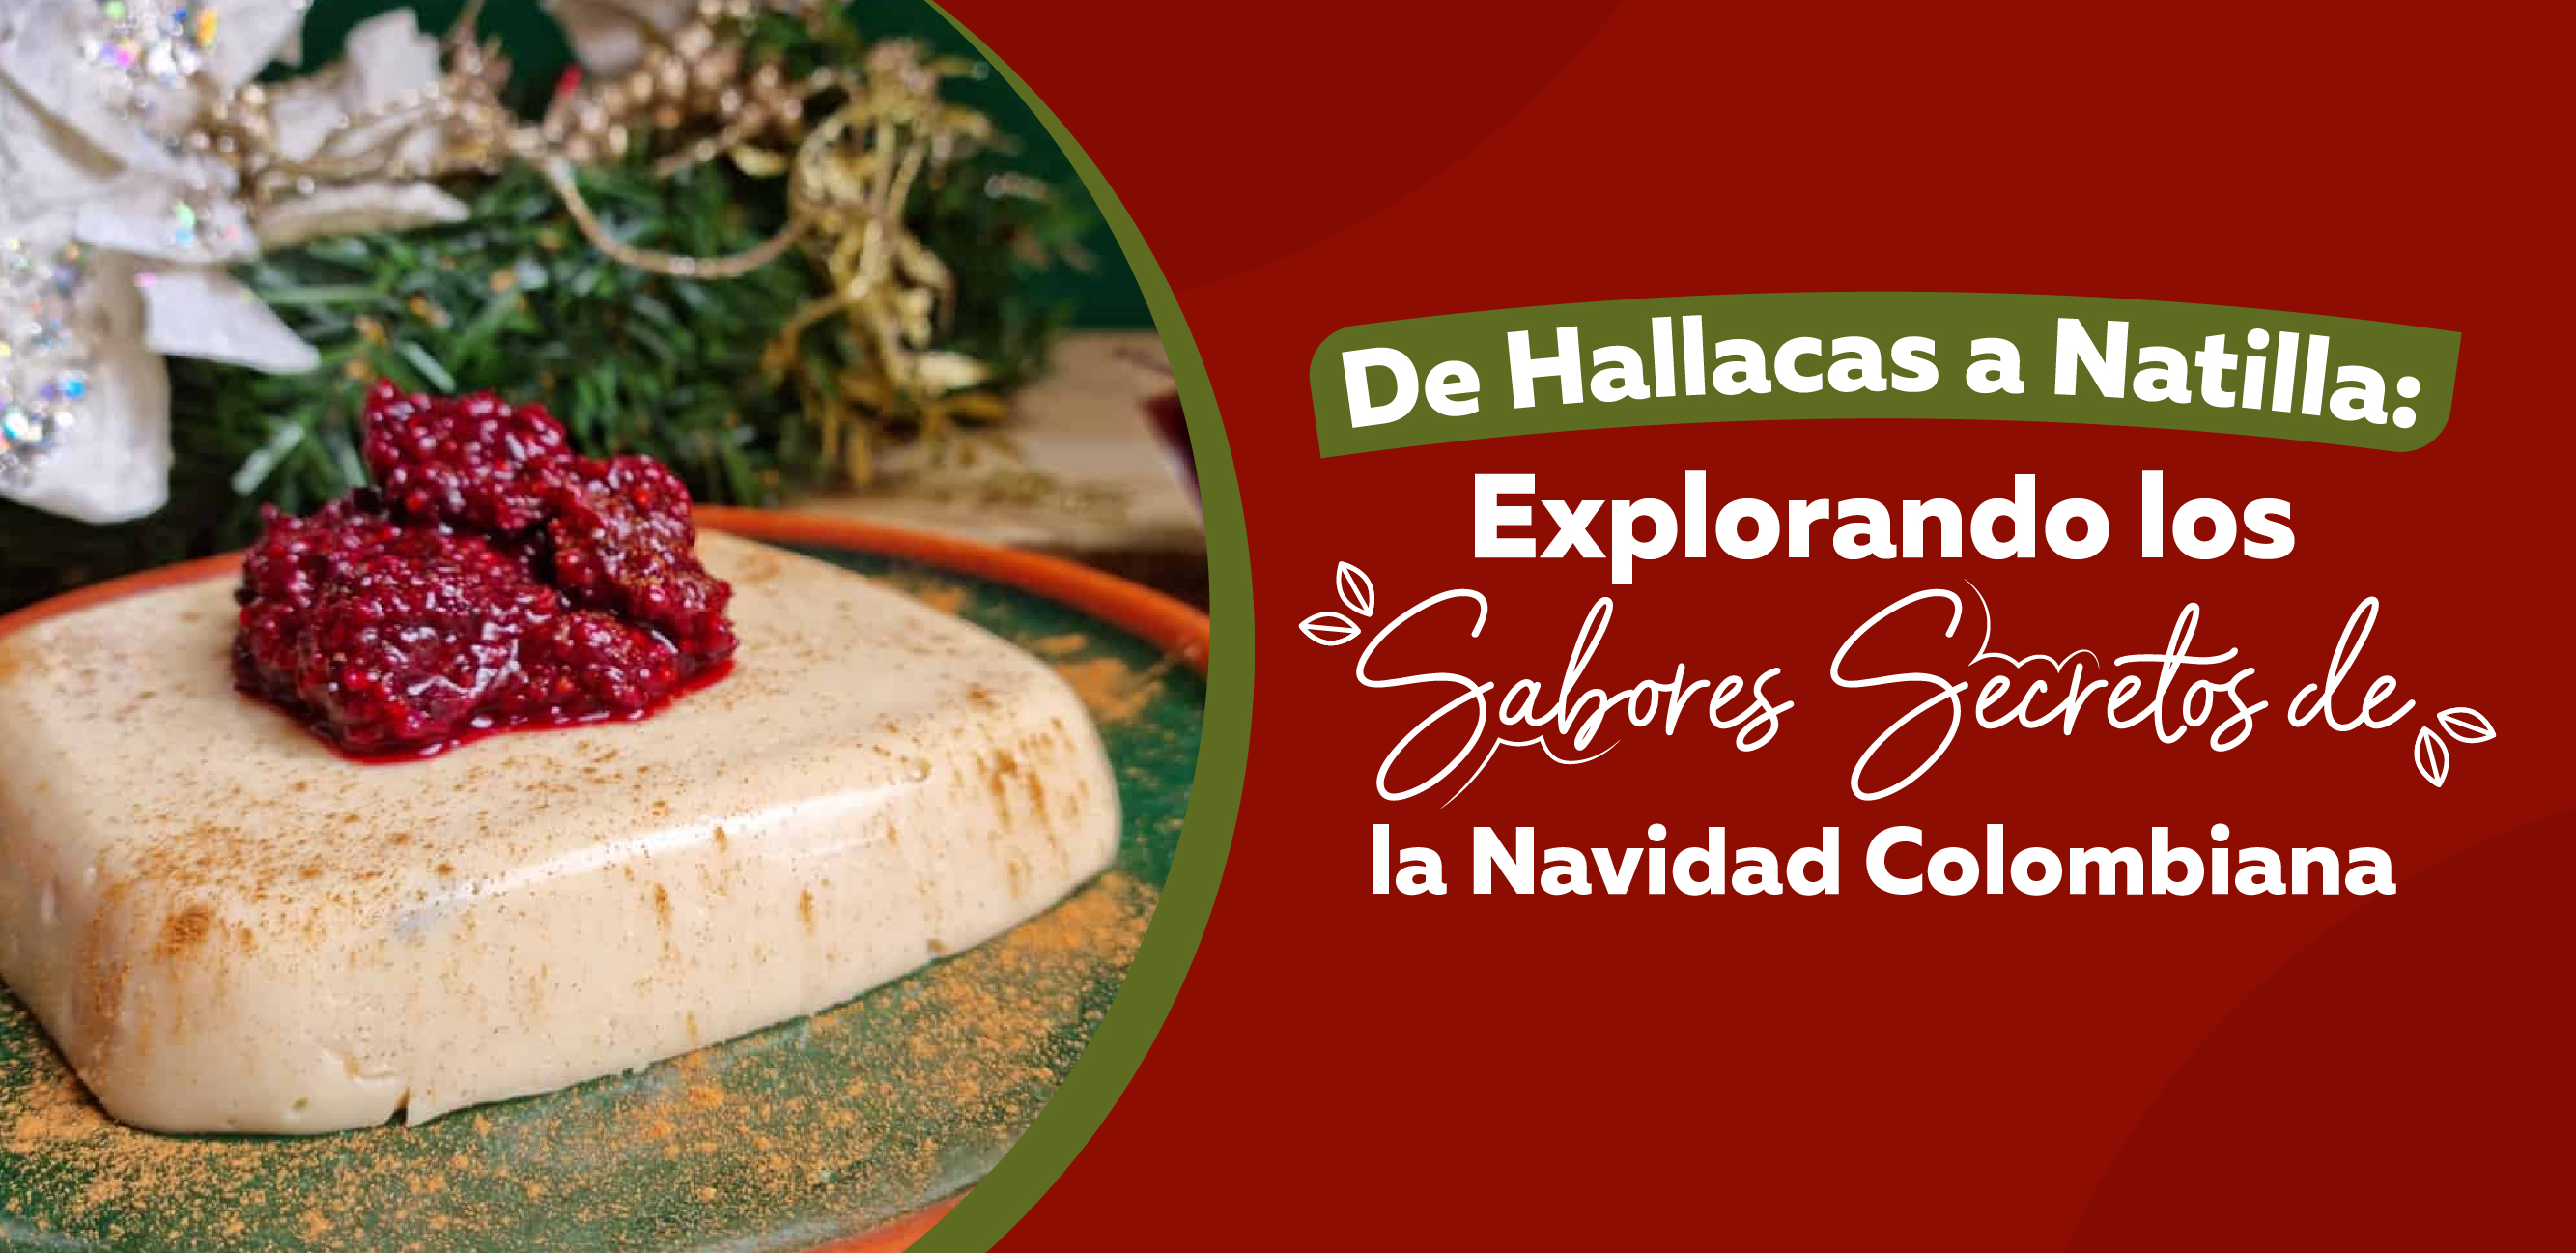 De hallacas a natilla: Explorando los sabores secretos de la navidad colombiana